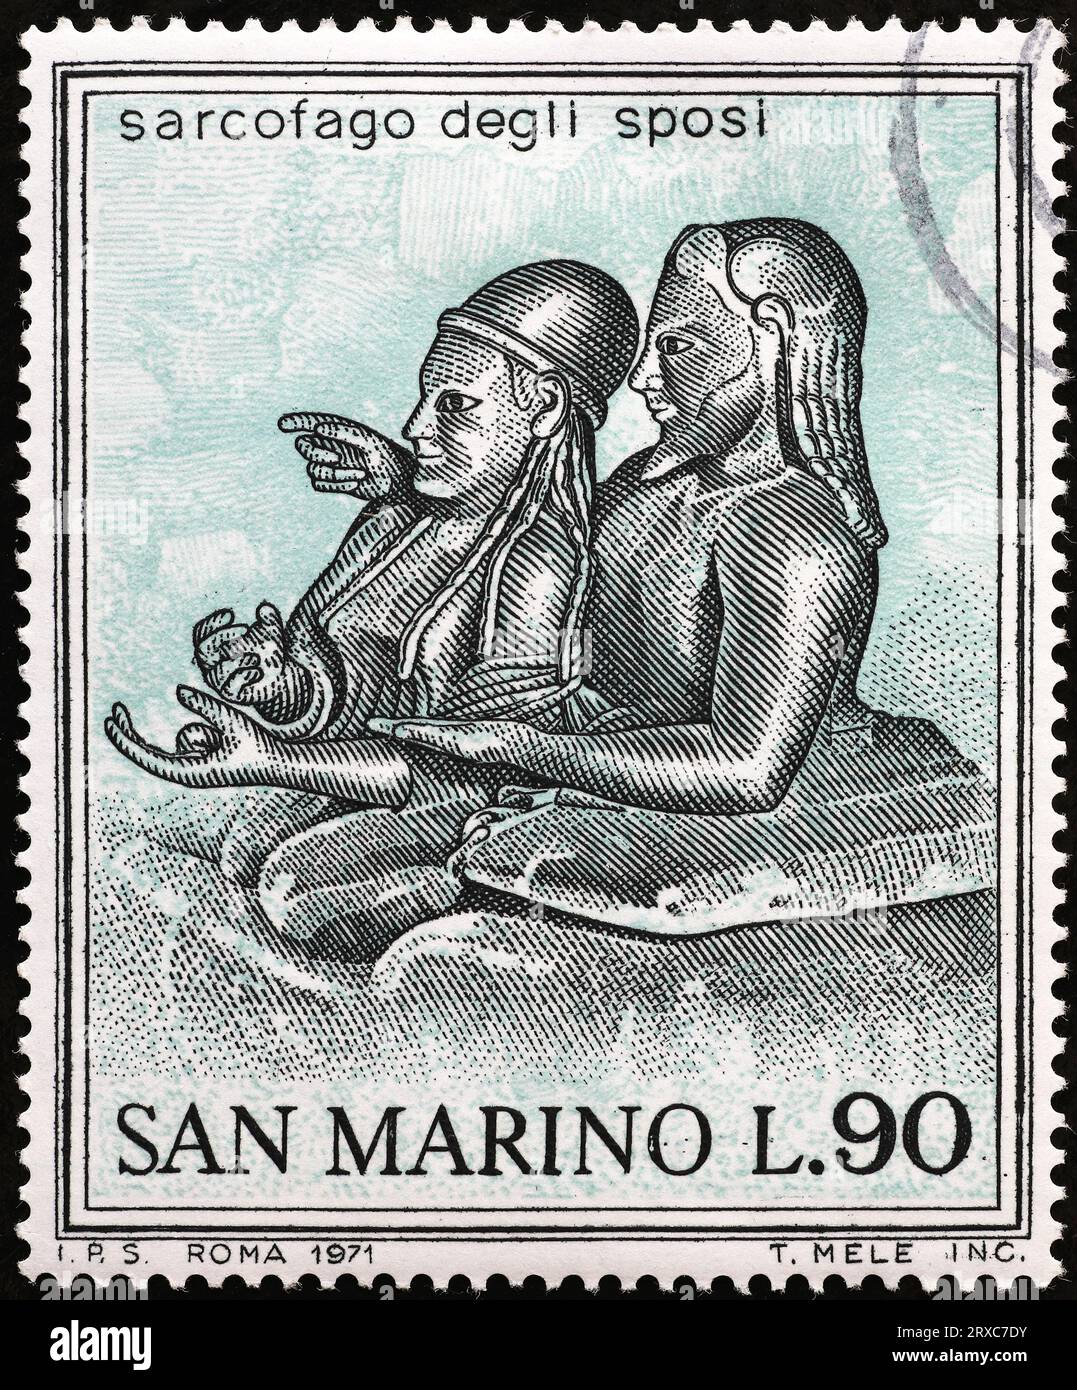 Il sarcofago degli sposi, capolavoro dell'arte etrusca, su francobollo Foto Stock